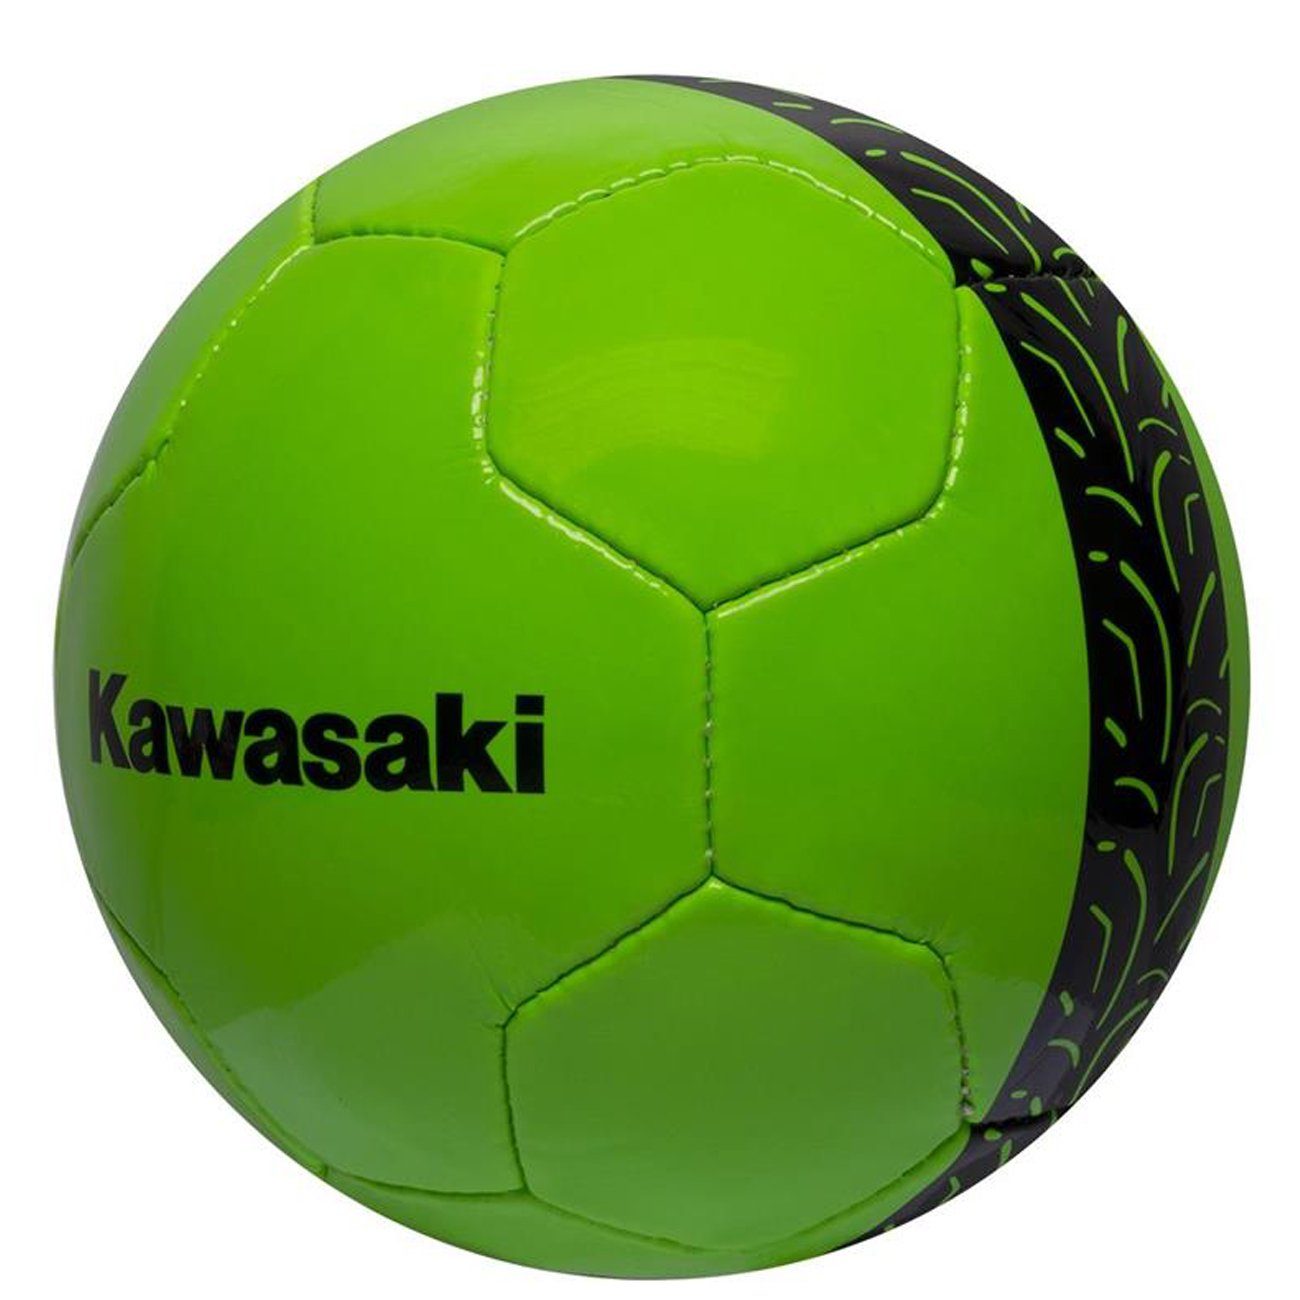 Kawasaki Fußball Kawasaki Fußball